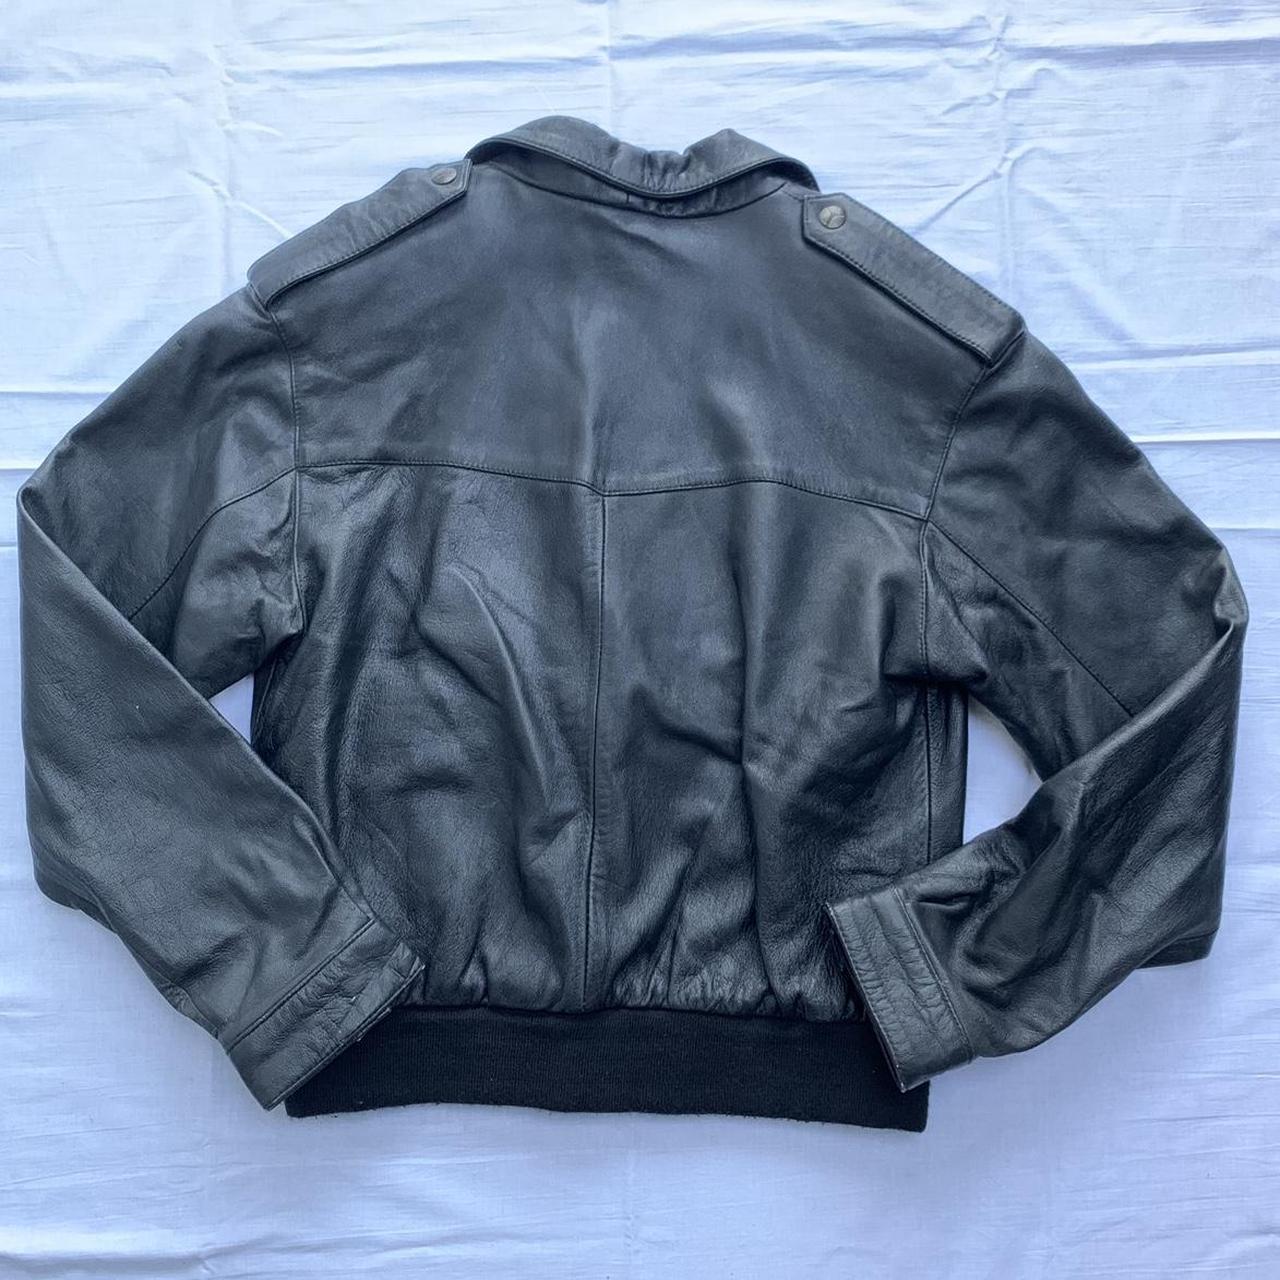 Vintage black faux leather bomber style jacket -... - Depop